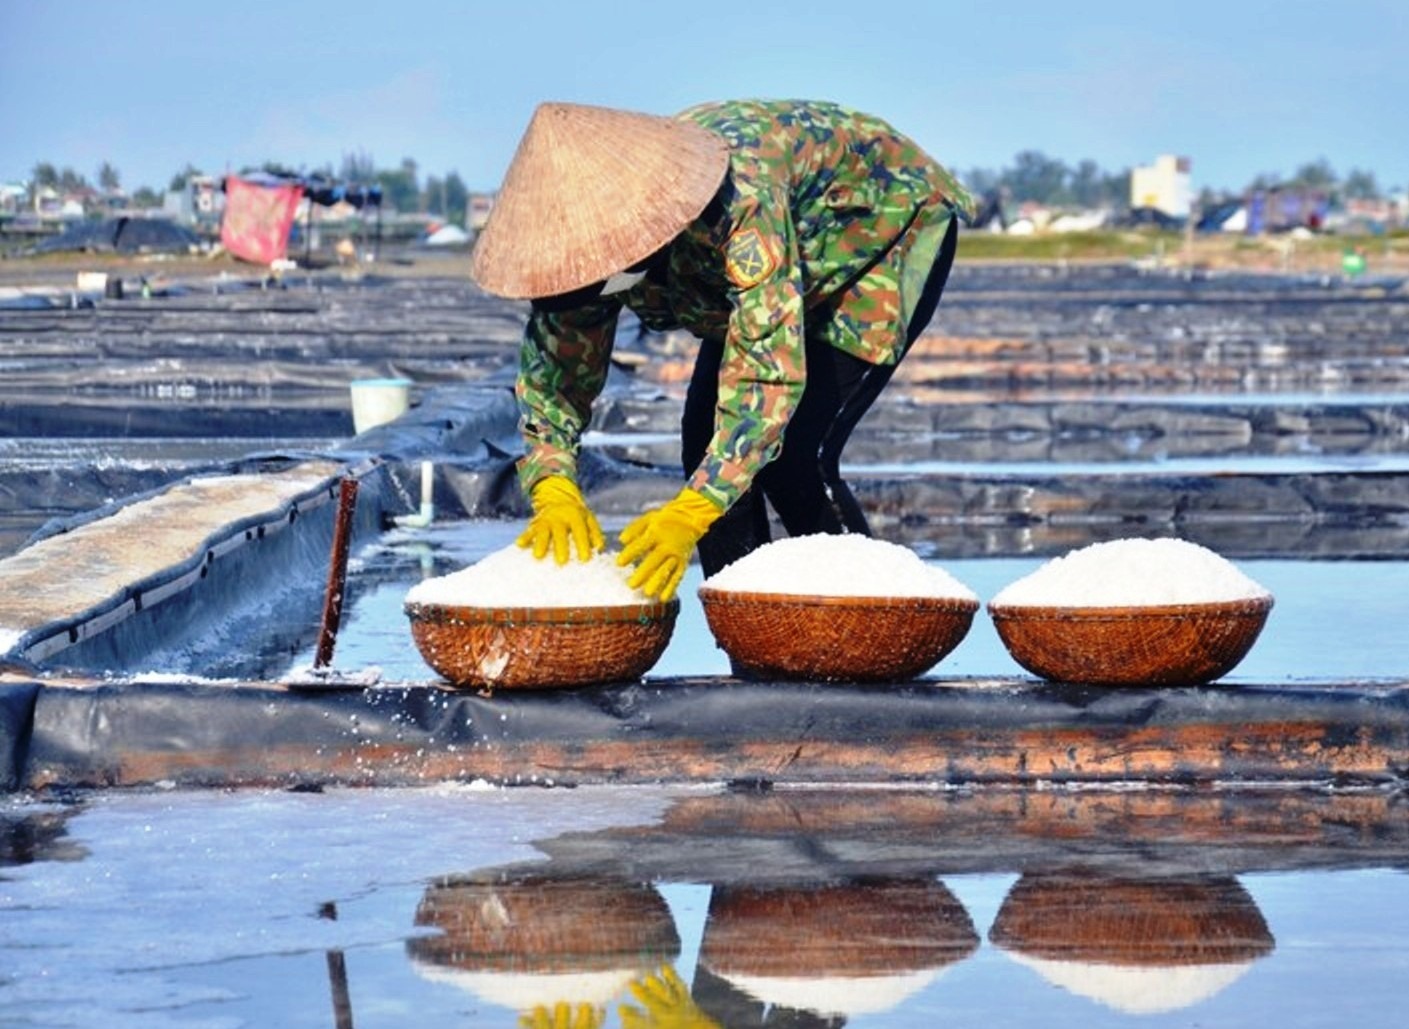 Thời tiết ở Quảng Ngãi mưa lạnh kéo dài, gây nhiều khó khăn cho nghề làm muối, dẫn đến sản lượng muối sụt giảm, tuy nhiên giá lại tăng cao kỷ lục, nên người làm muối vẫn có lãi. Ảnh: Ngọc Viên